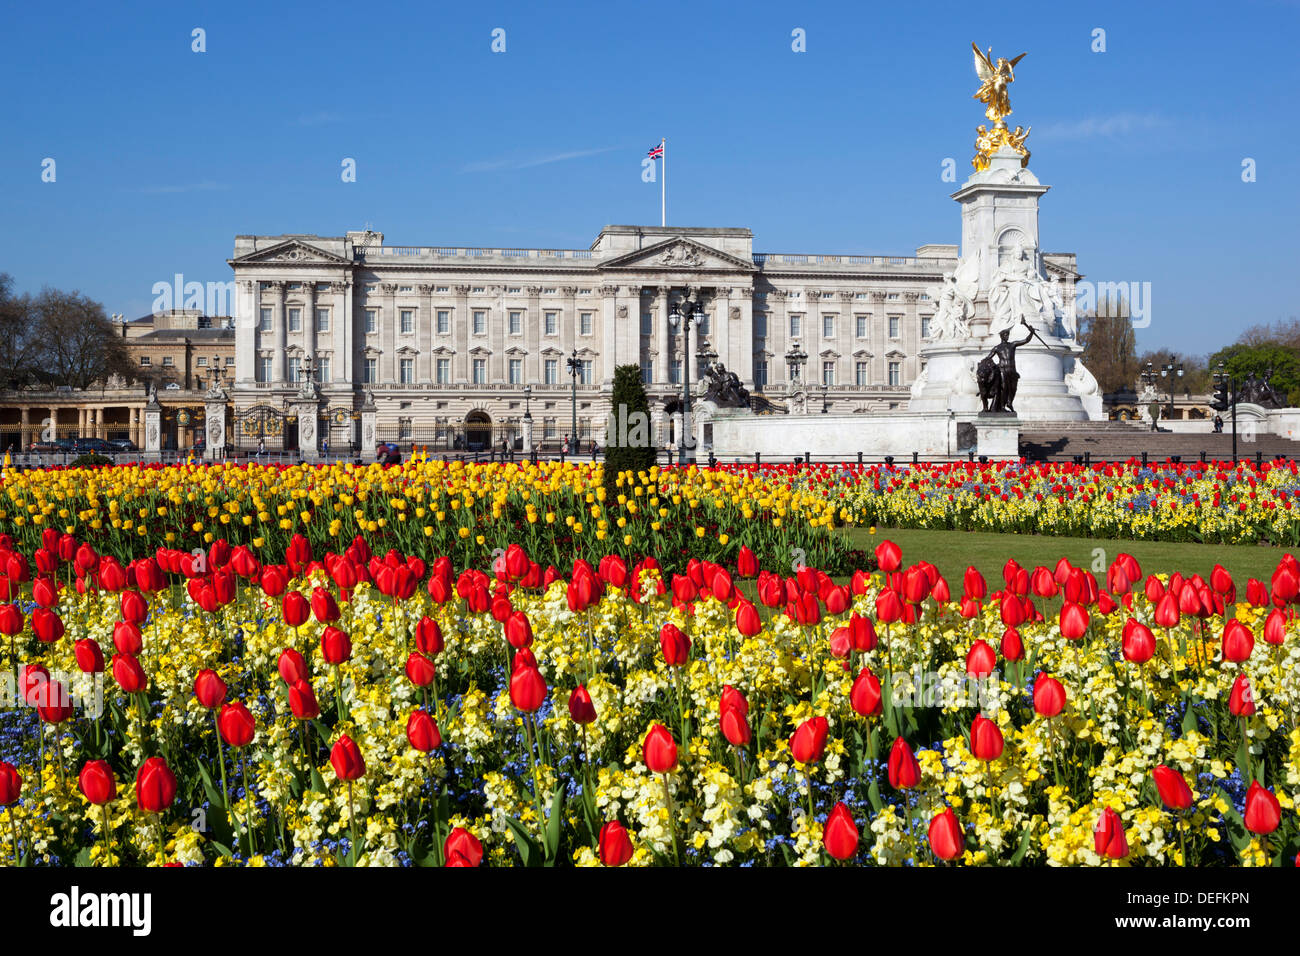 Le palais de Buckingham et la reine Victoria Monument avec tulipes, Londres, Angleterre, Royaume-Uni, Europe Banque D'Images